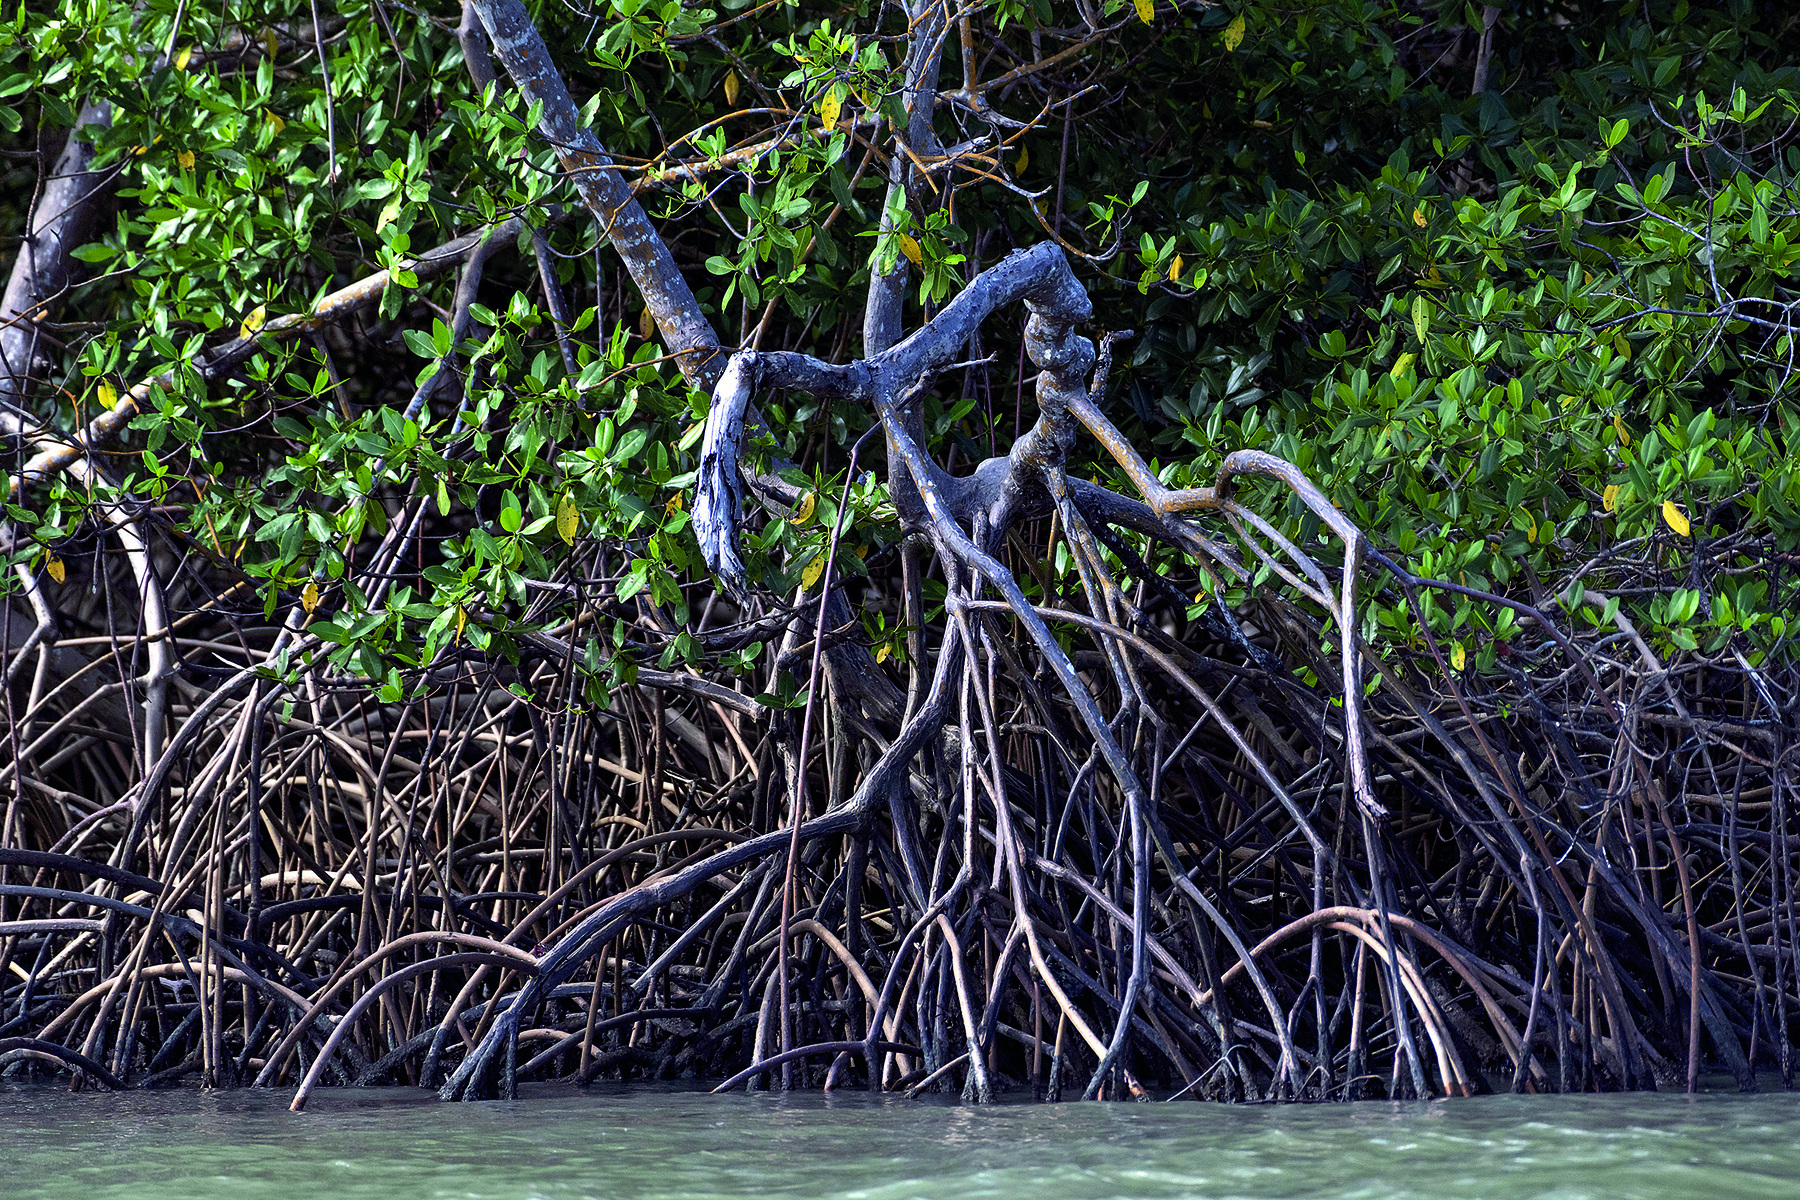 Fotografia. Numerosas raízes cinzas se bifurcam e saem da água de um rio, concentrando-se na margem. Ao fundo, vegetação verde.